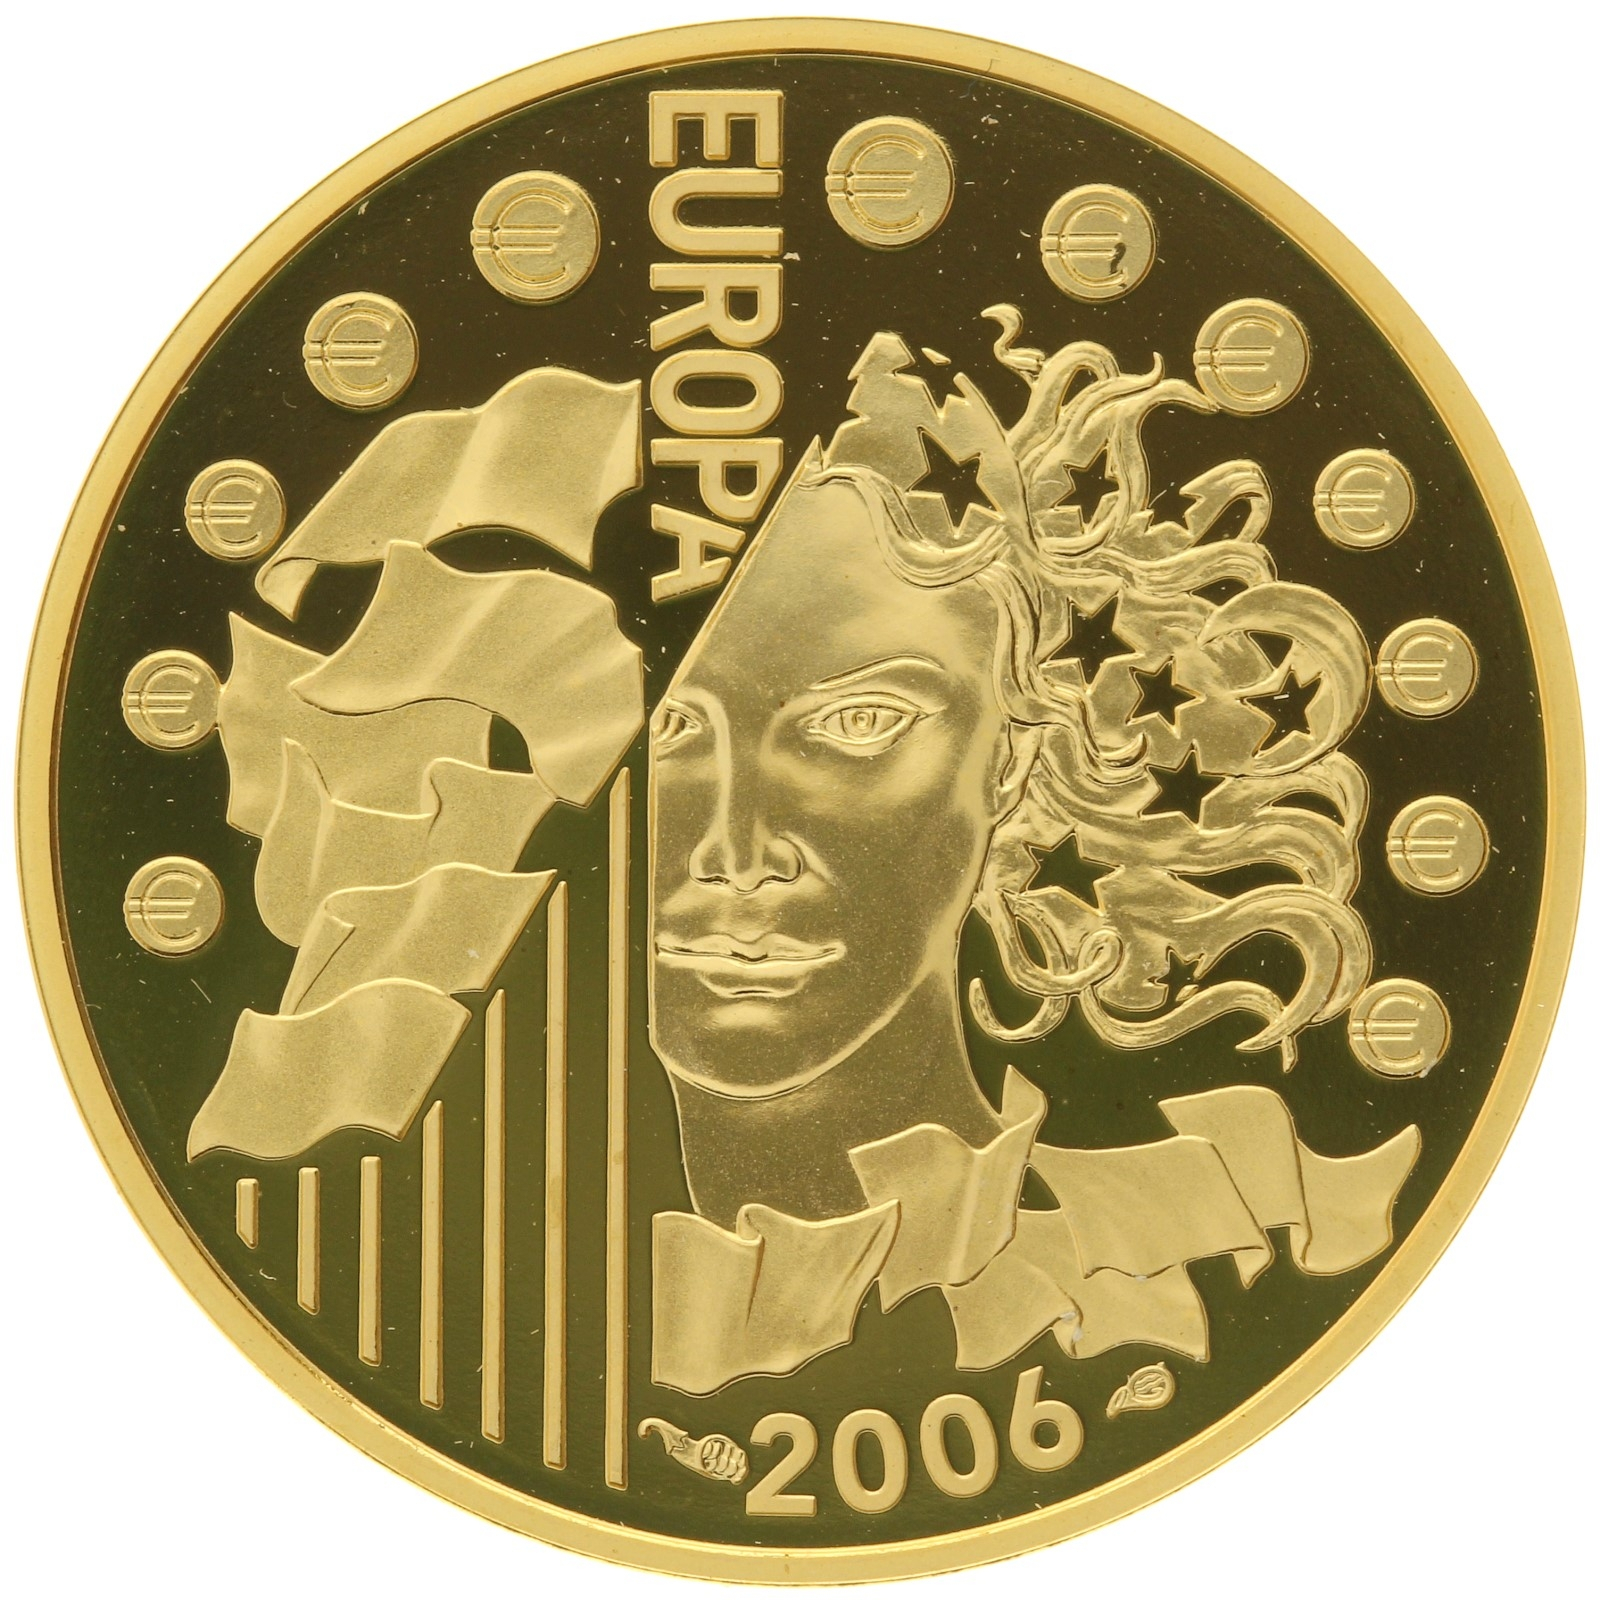 France - 10 euro - 2006 - Journée de l'Europe - 1/4oz